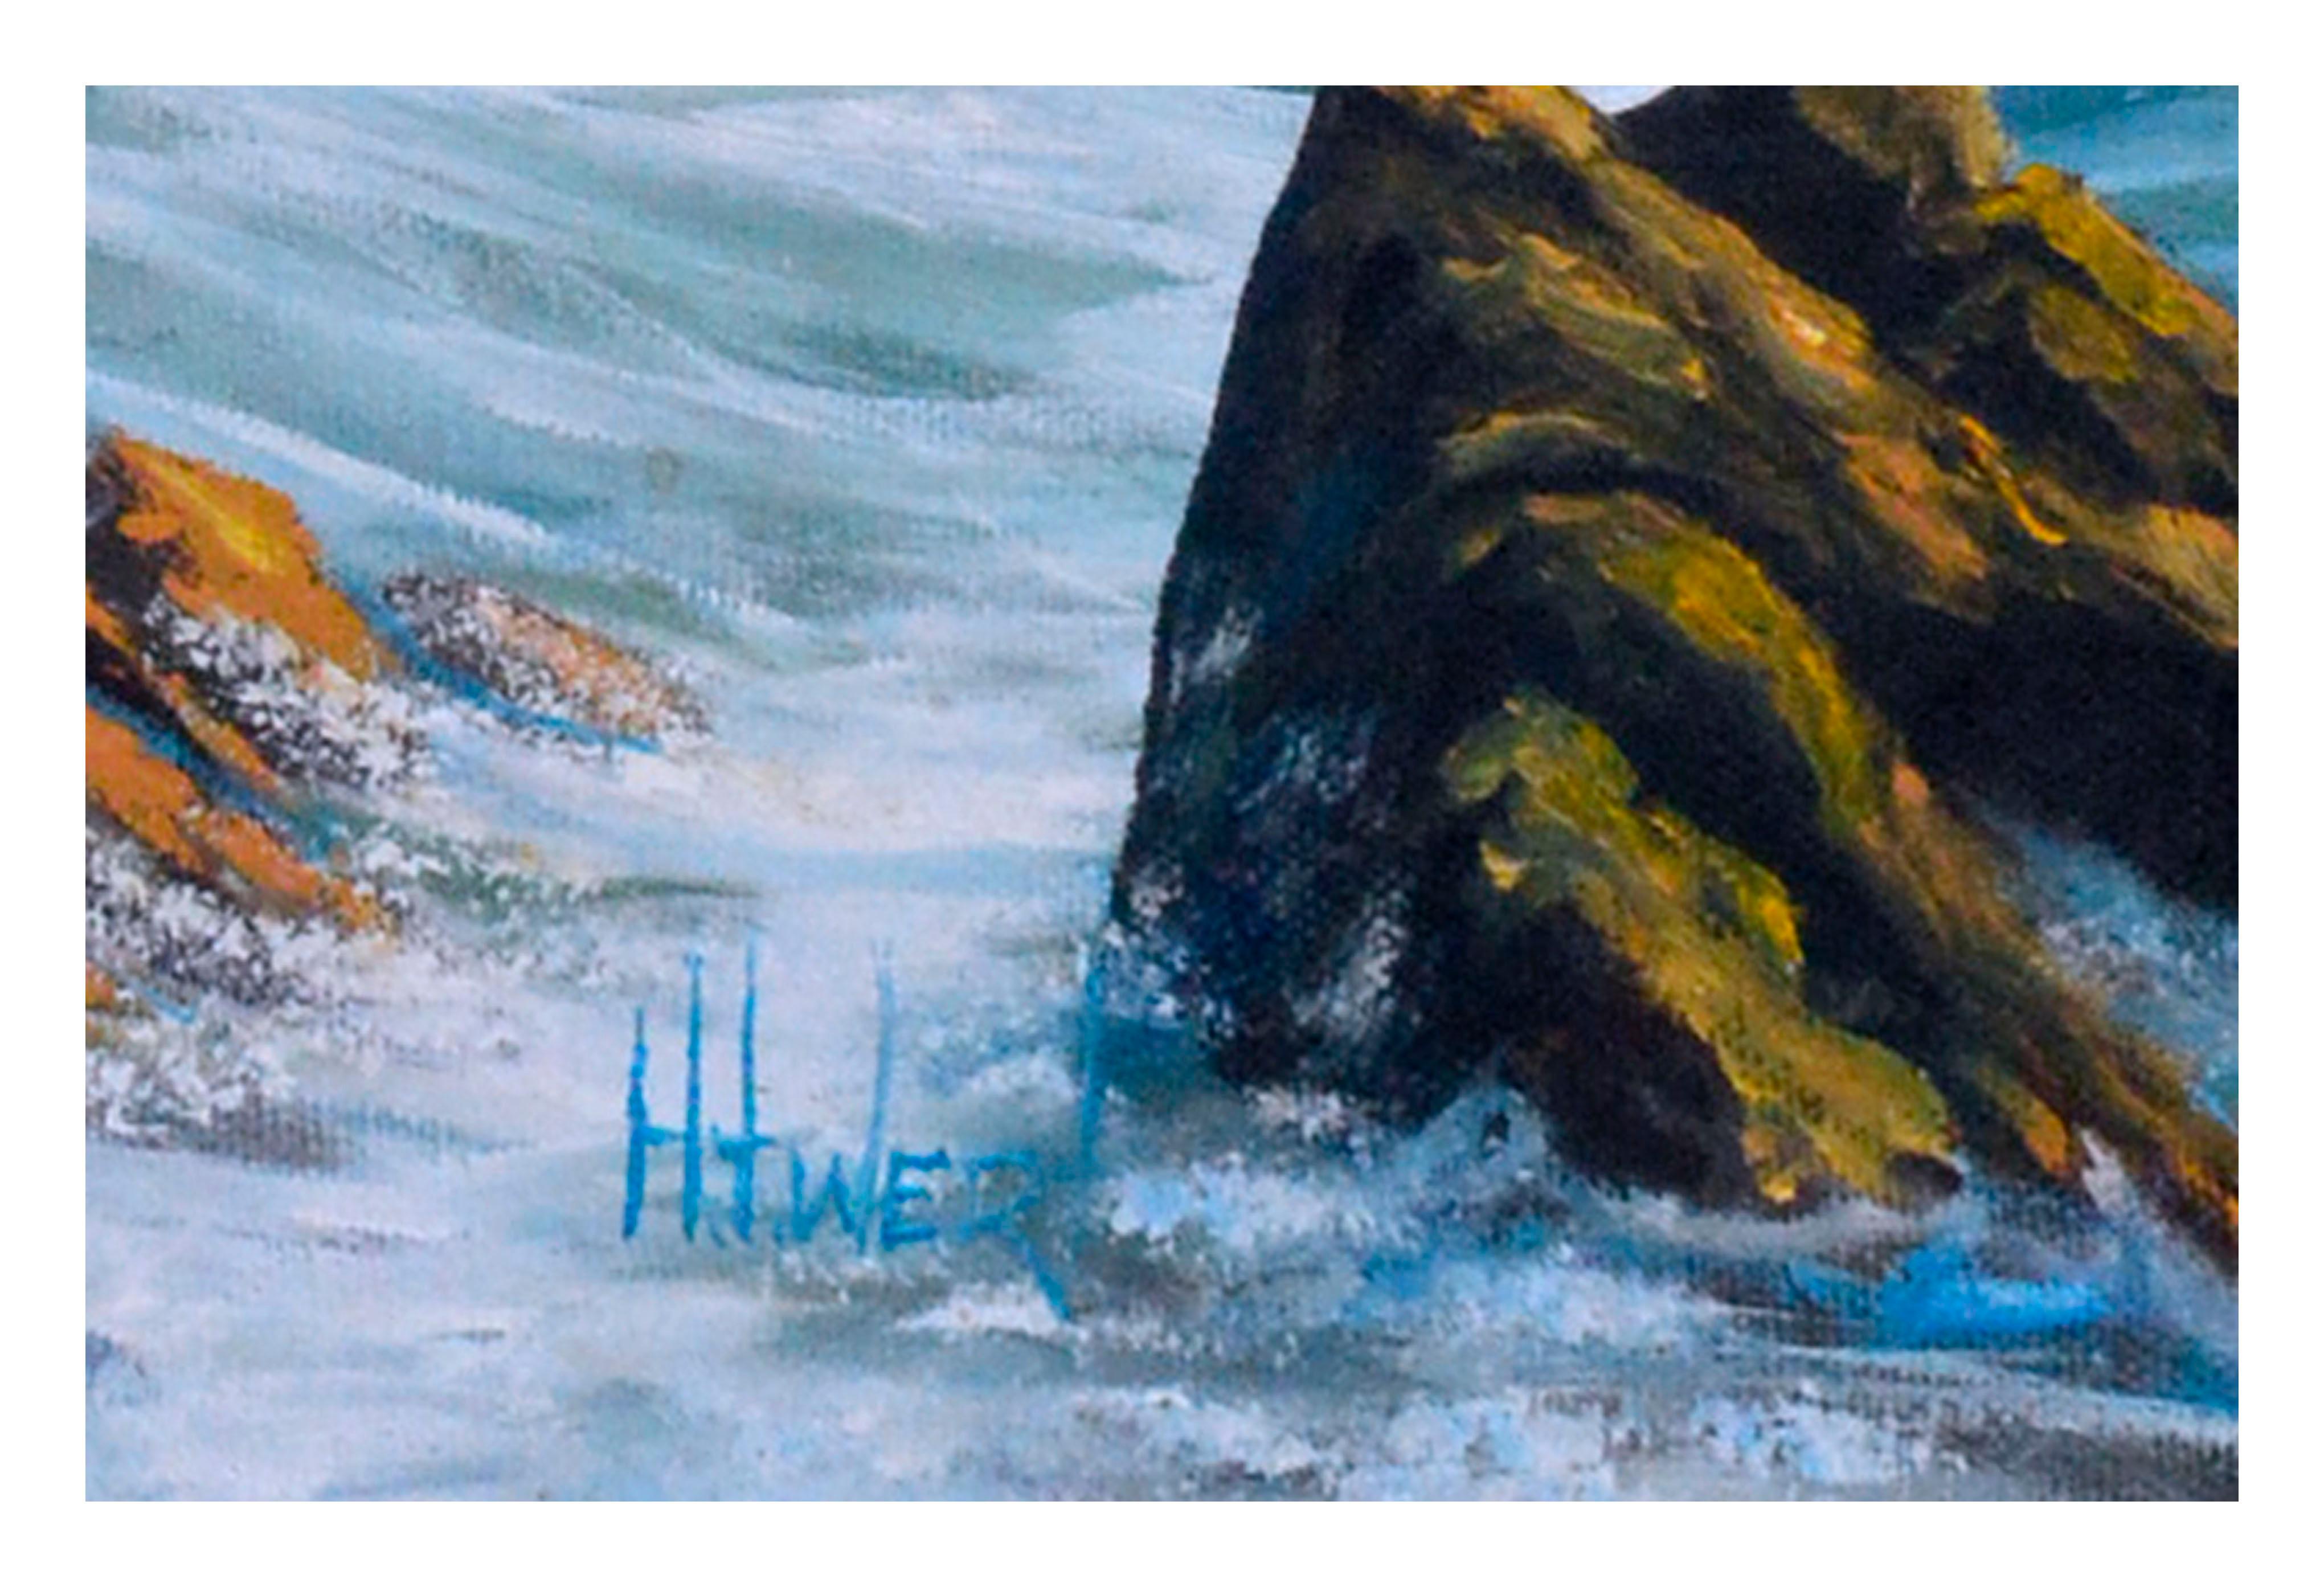 Majestic vintage seascape with dynamic waves crashing along a rocky coast by H.T. Wert (américain, 20ème siècle). Signé en bas à droite. Signé 